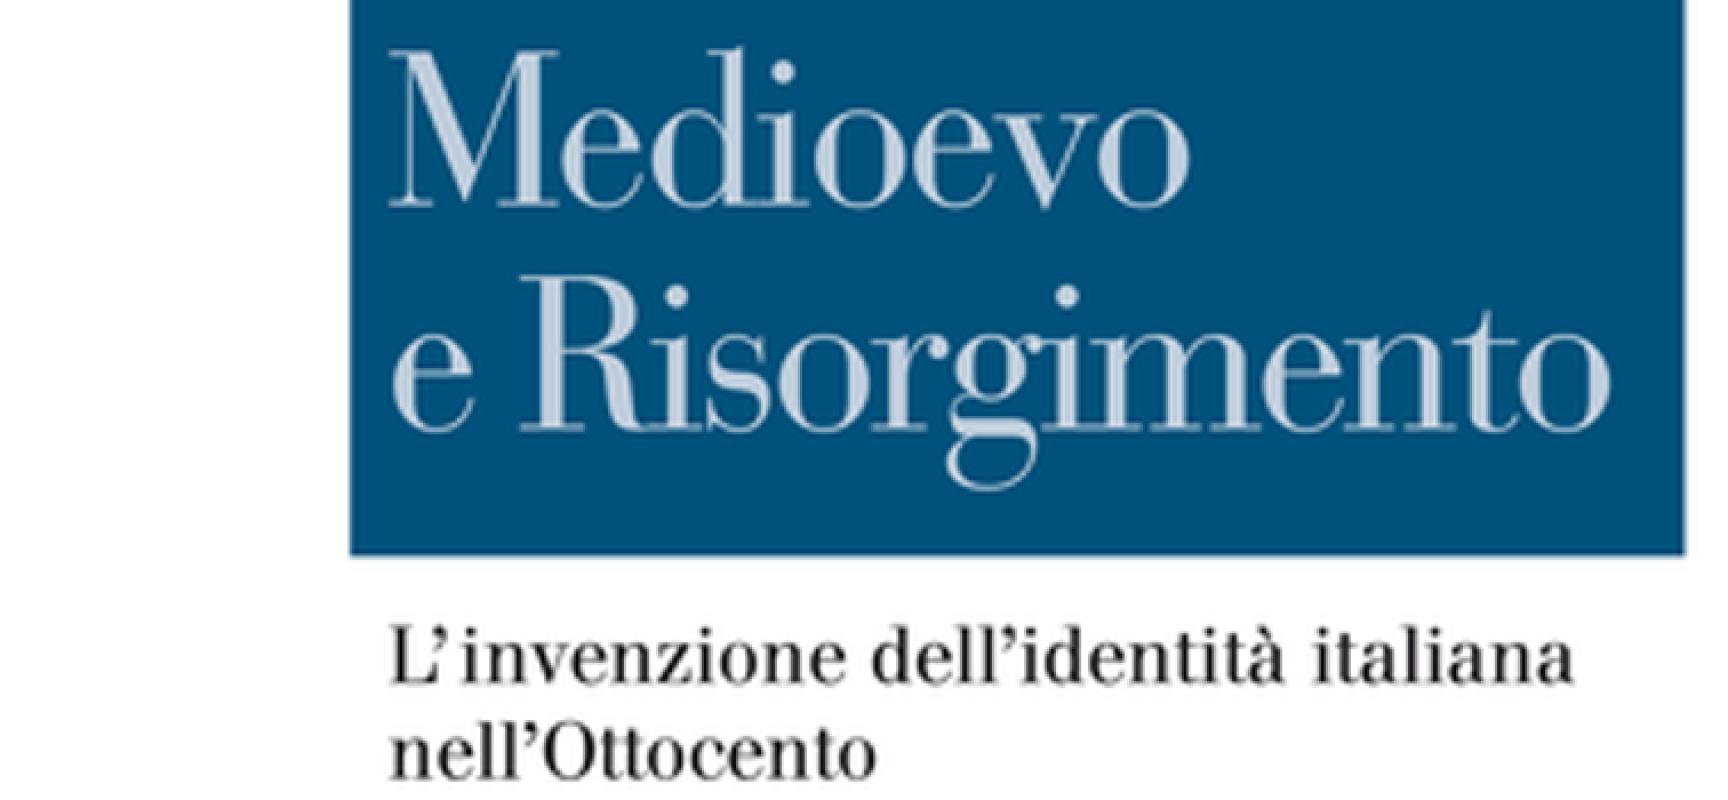 Storia a Santa Margherita, martedì si parla di Medioevo e Risorgimento con Duccio Balestracci